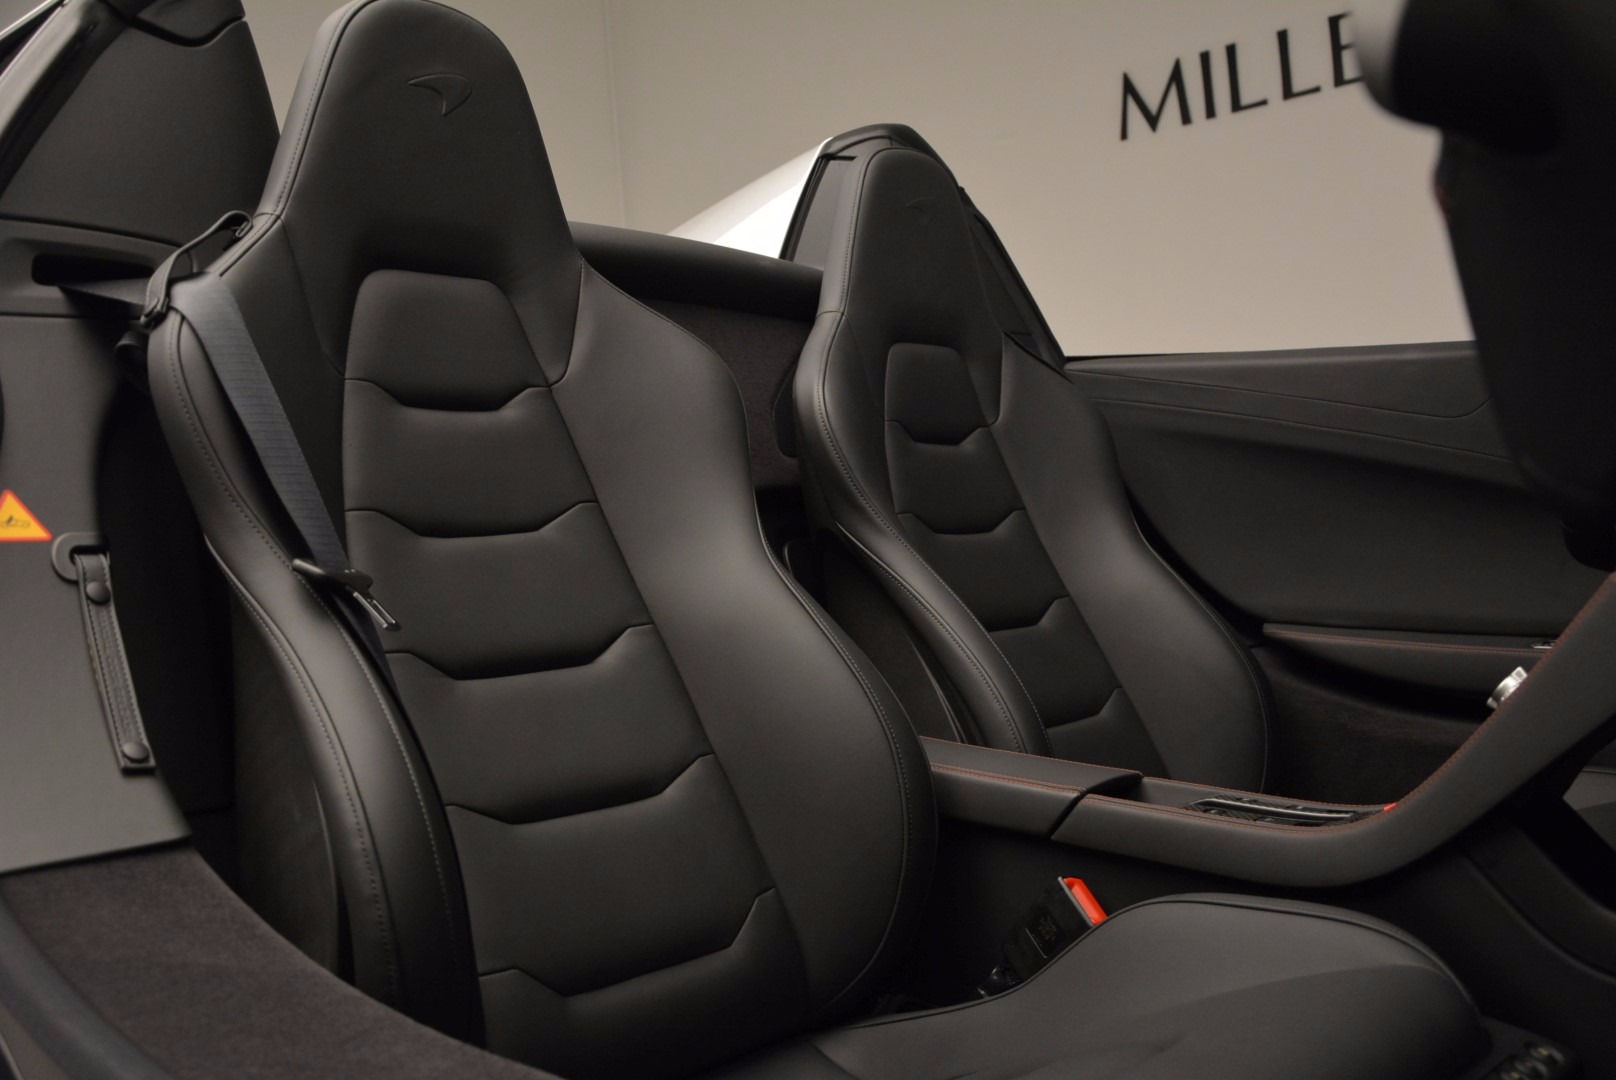 McLaren 12C interior - Seats